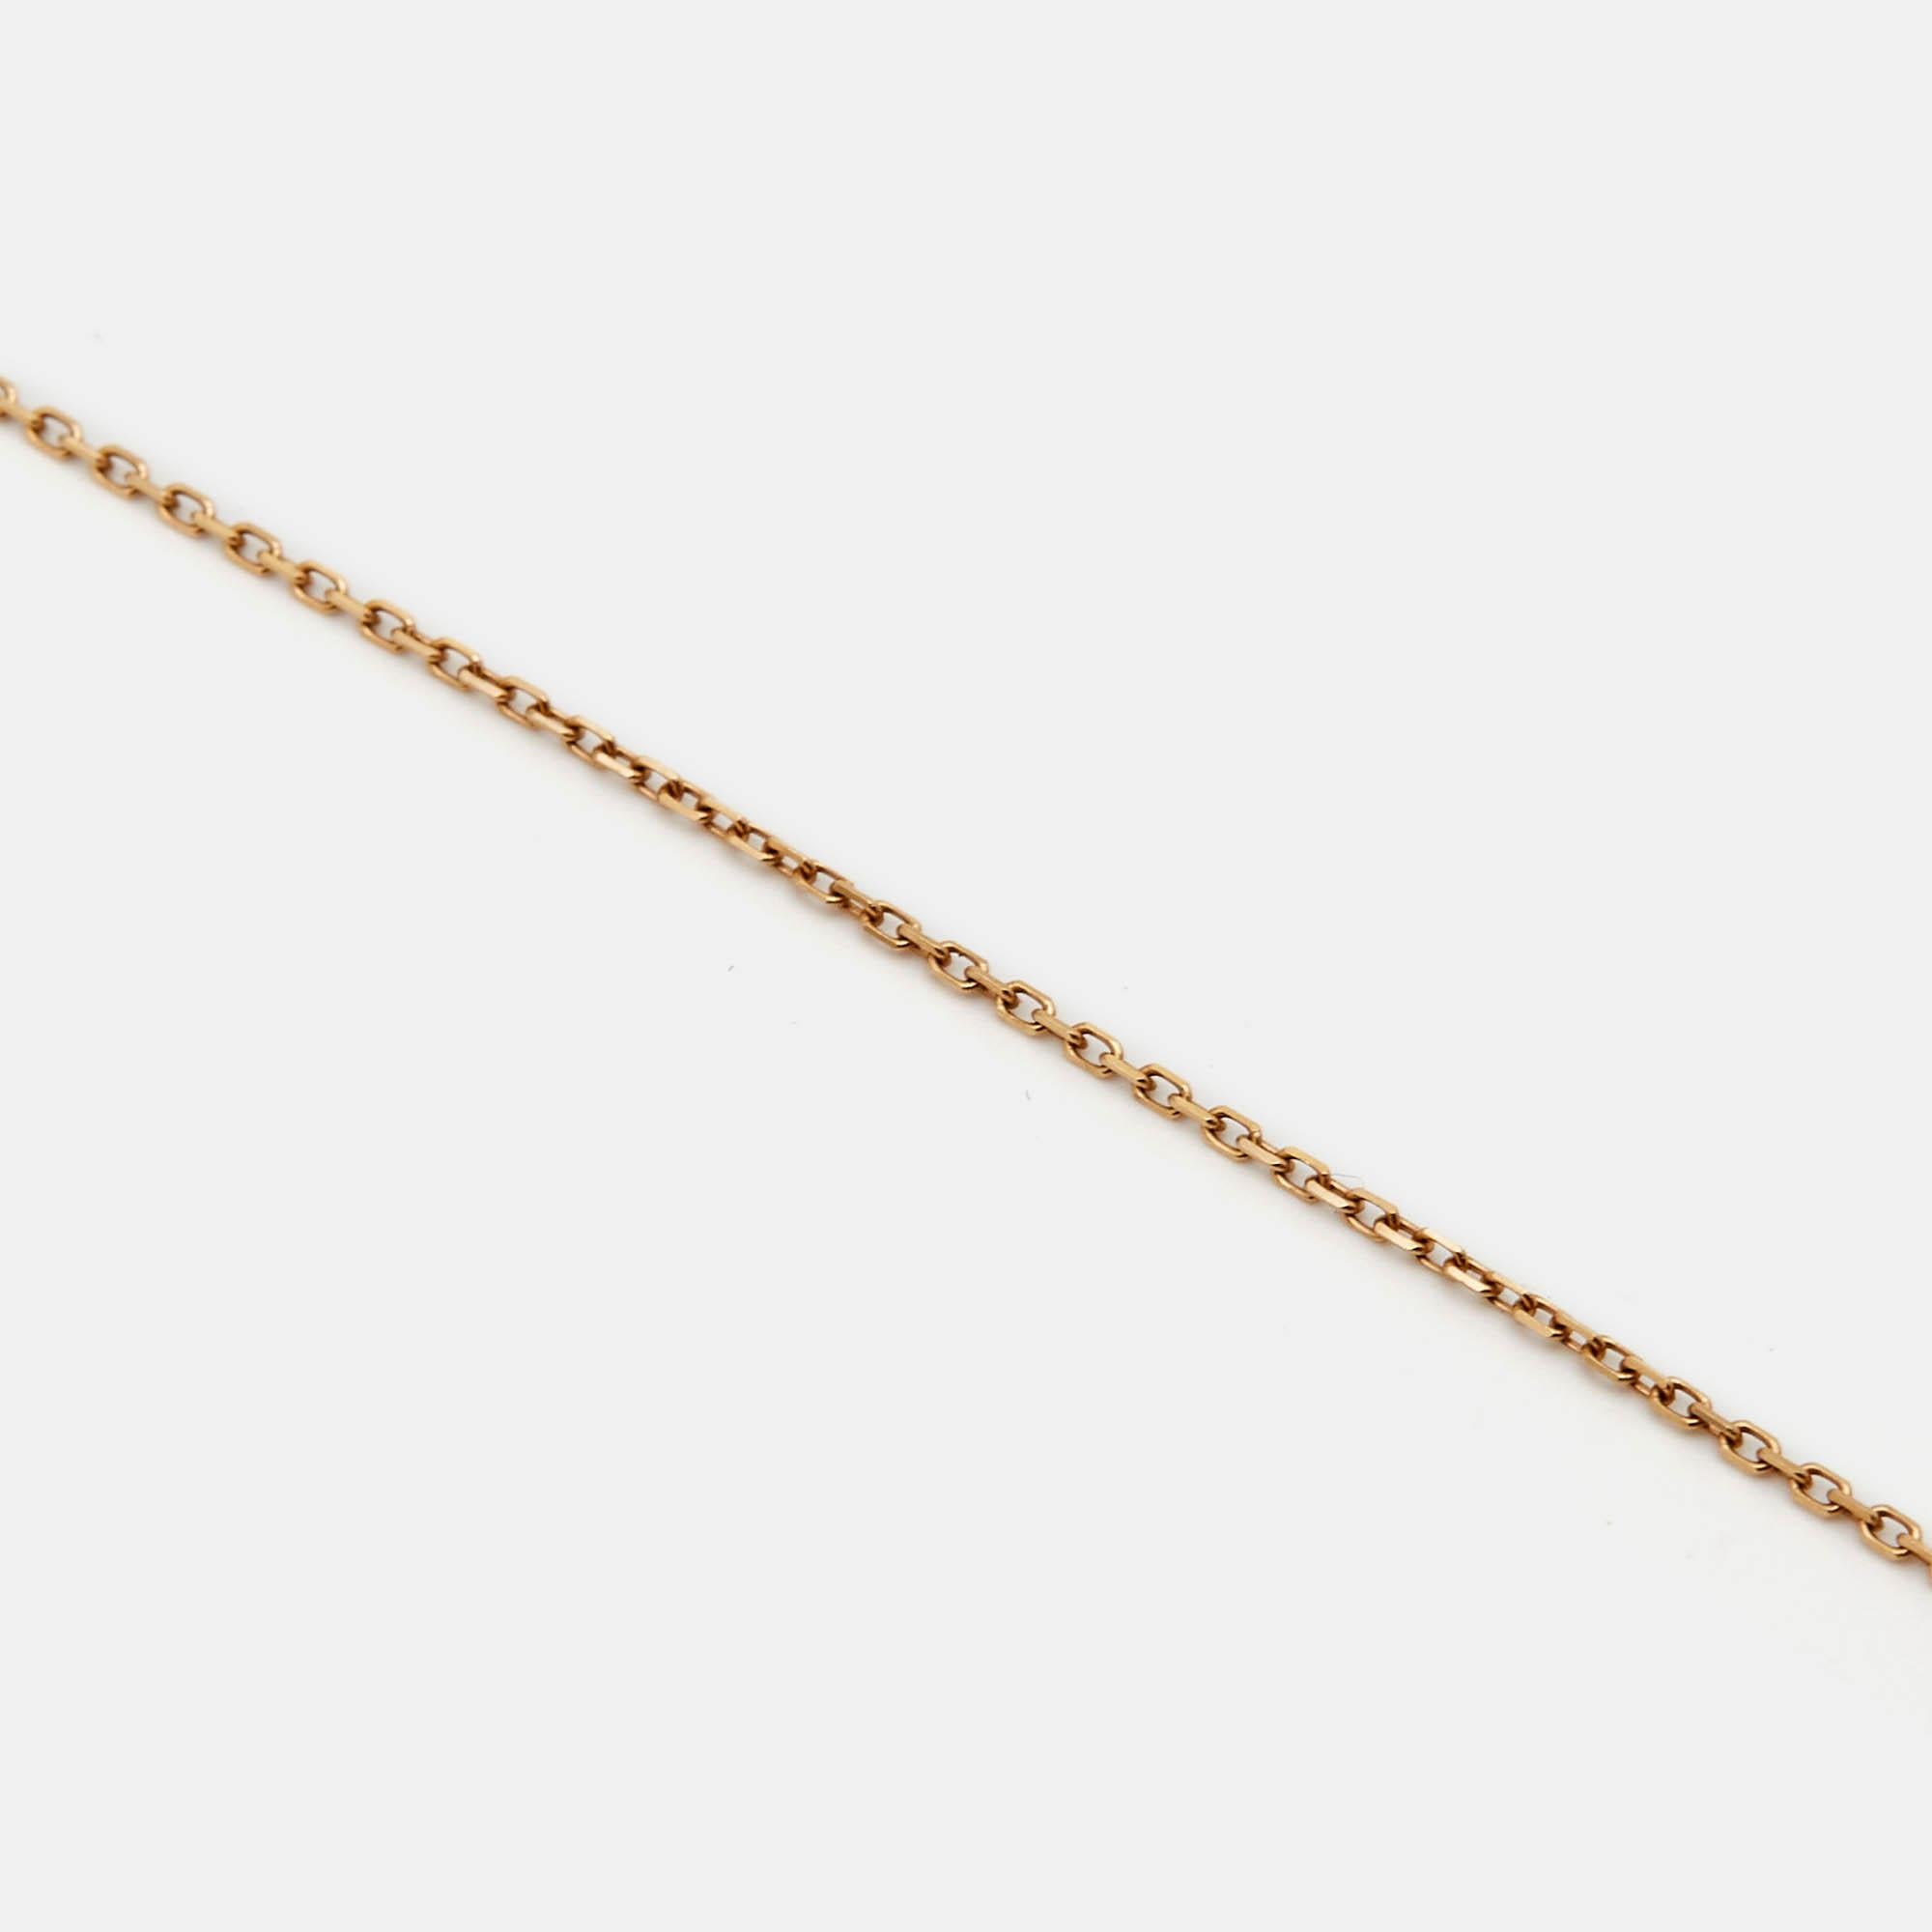 Das Collier Amulette de Cartier ist nicht nur elegant, sondern auch wunderschön luxuriös. Diese Halskette aus 18 Karat Roségold besteht aus einer mit Malachit eingelegten Scheibe mit einem einzelnen Diamanten.

Enthält
Originalfall